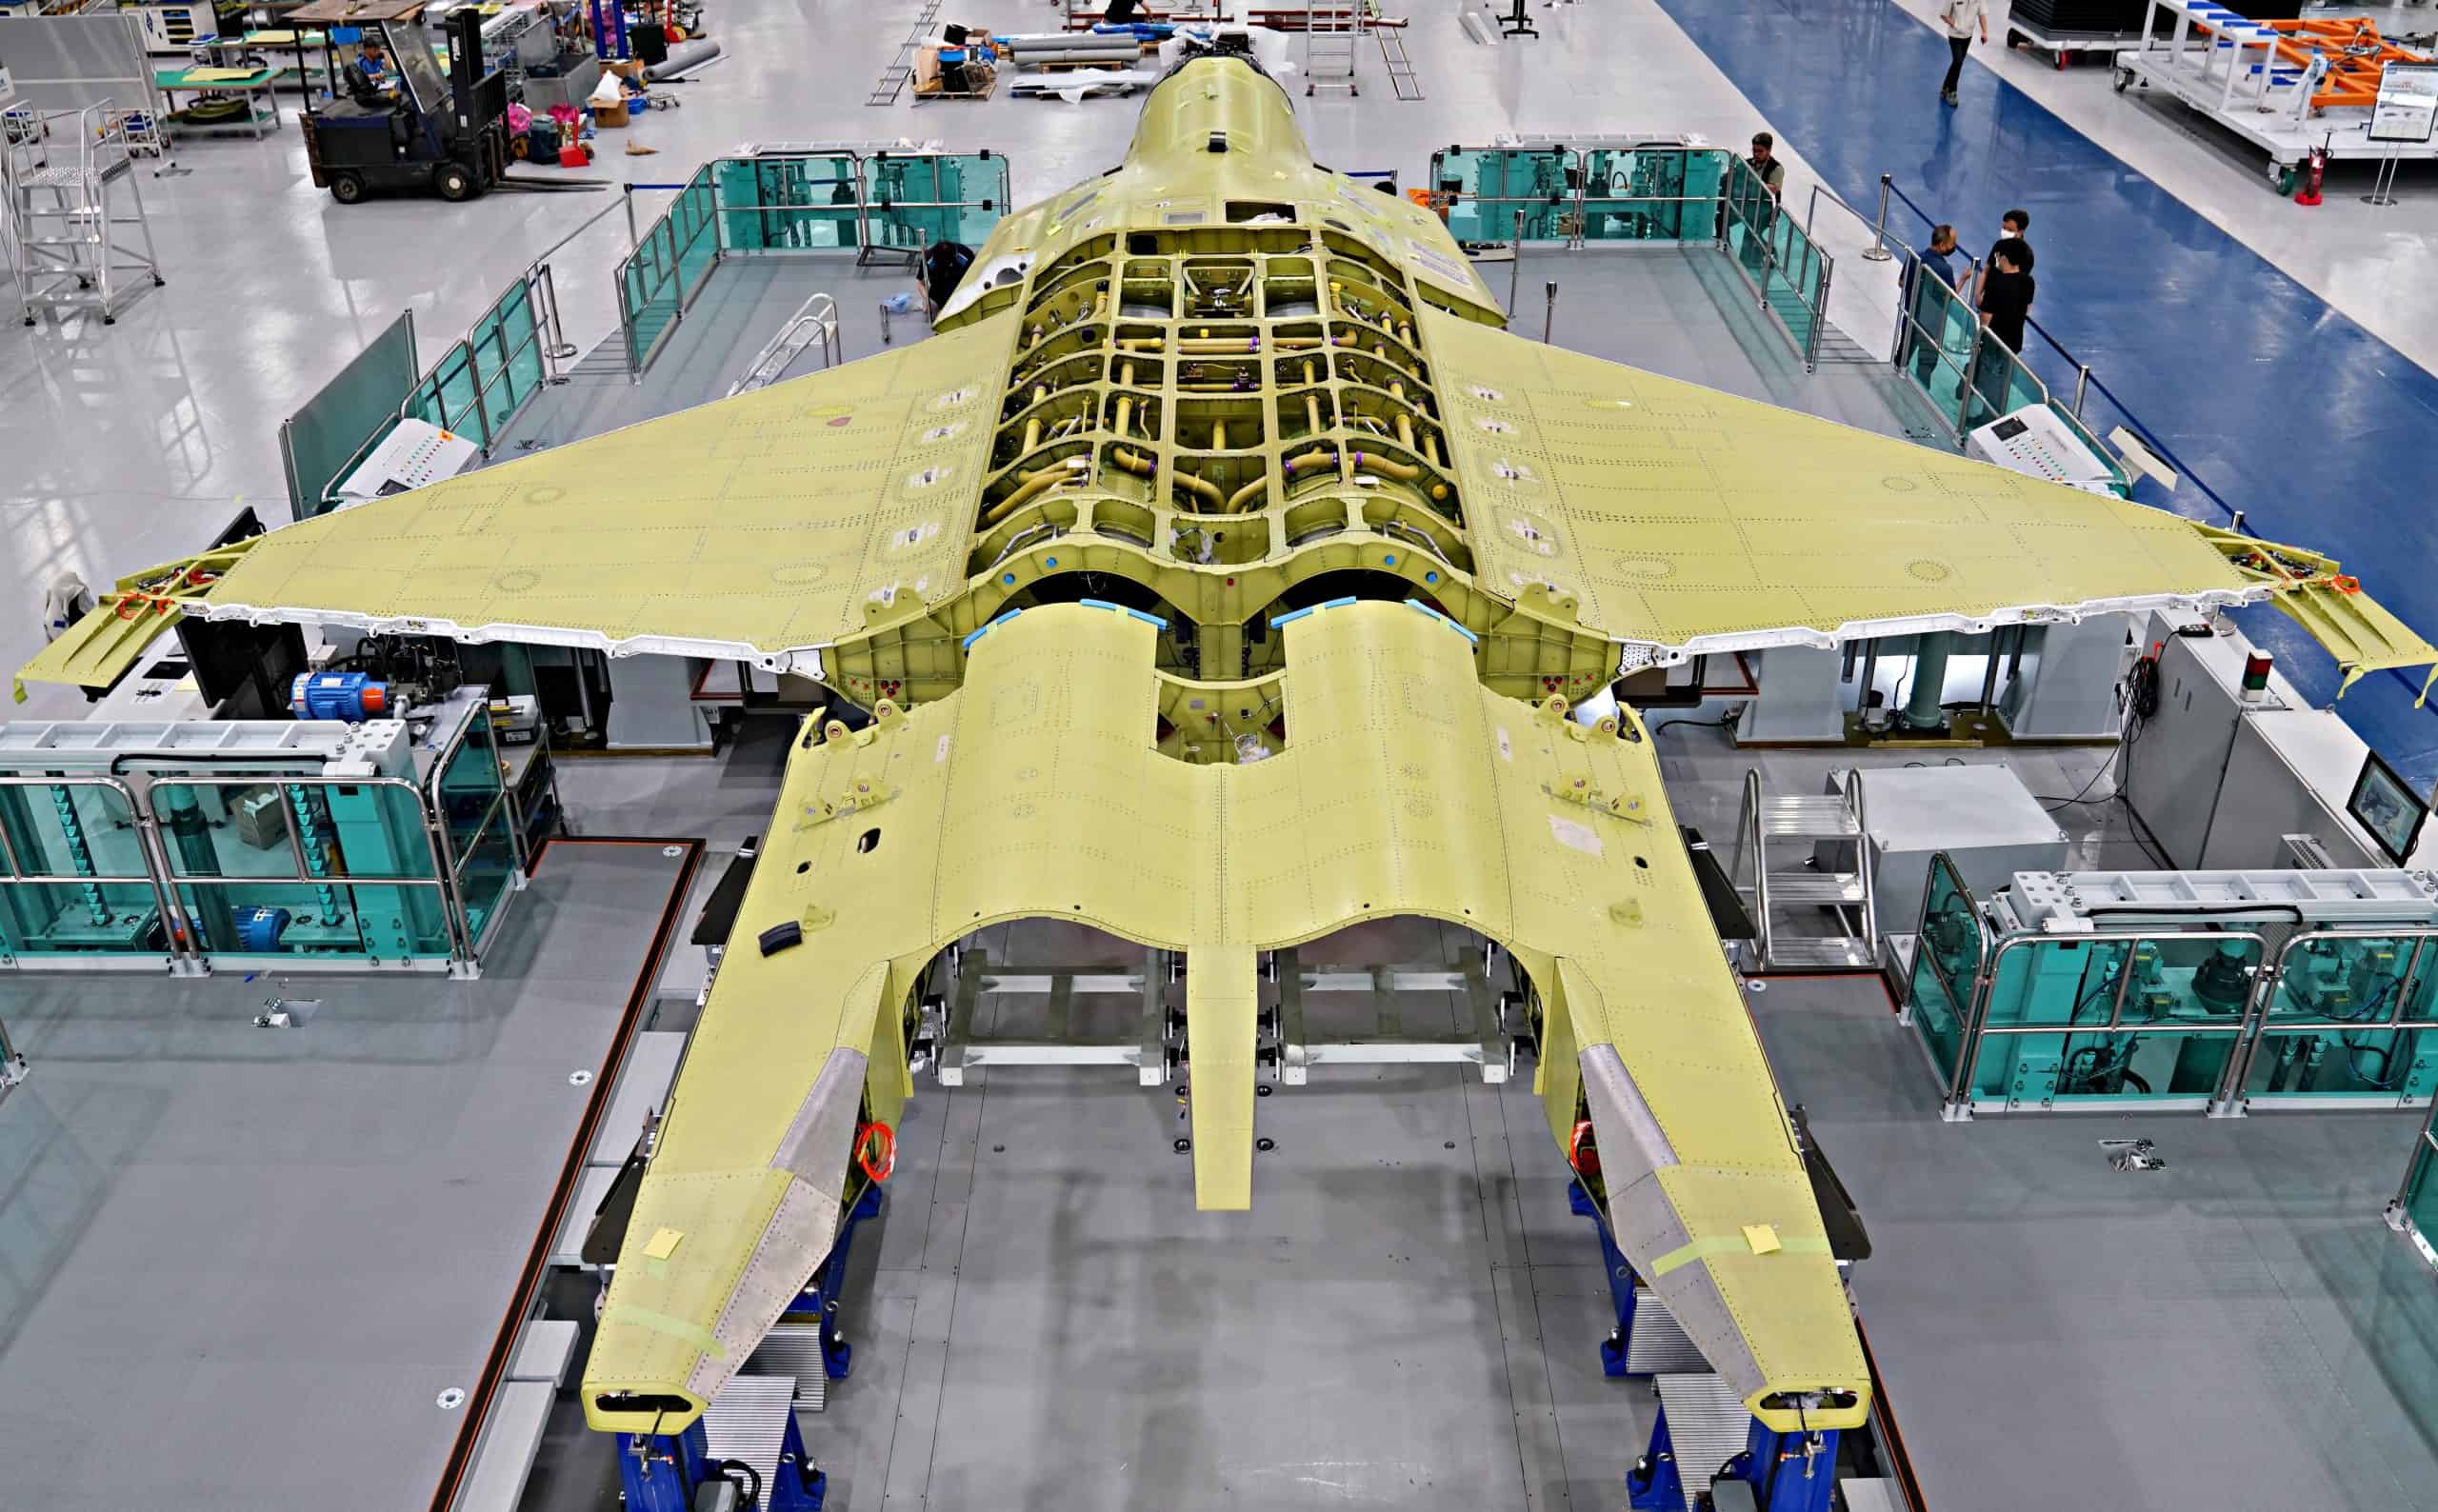 Збірка першого прототипу винищувача KF-X Республіки Корея. Фото: Korea Aerospace Industries